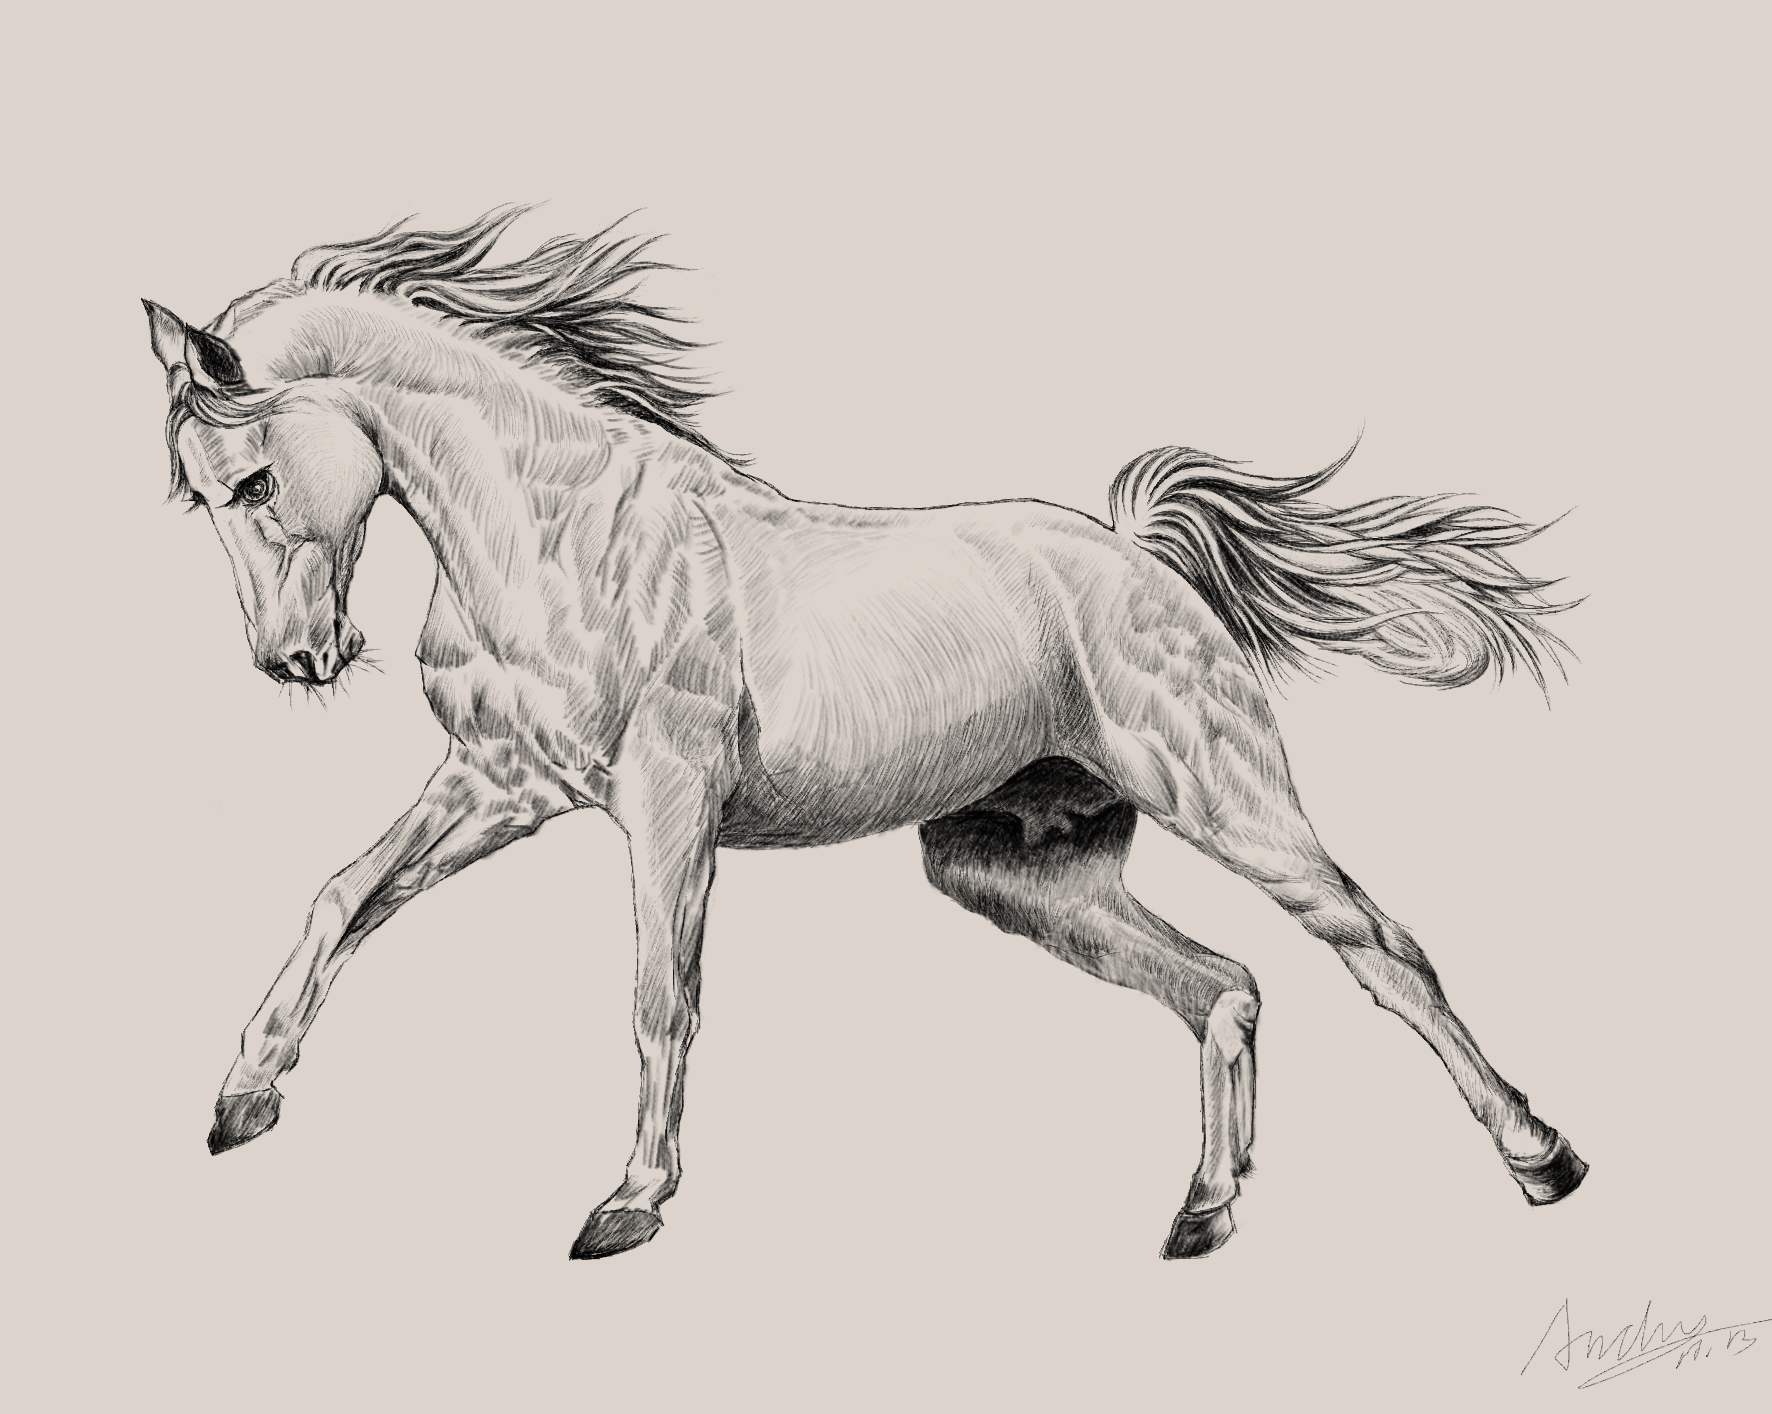 这张马的素描是用手绘板画的,技巧还不成熟